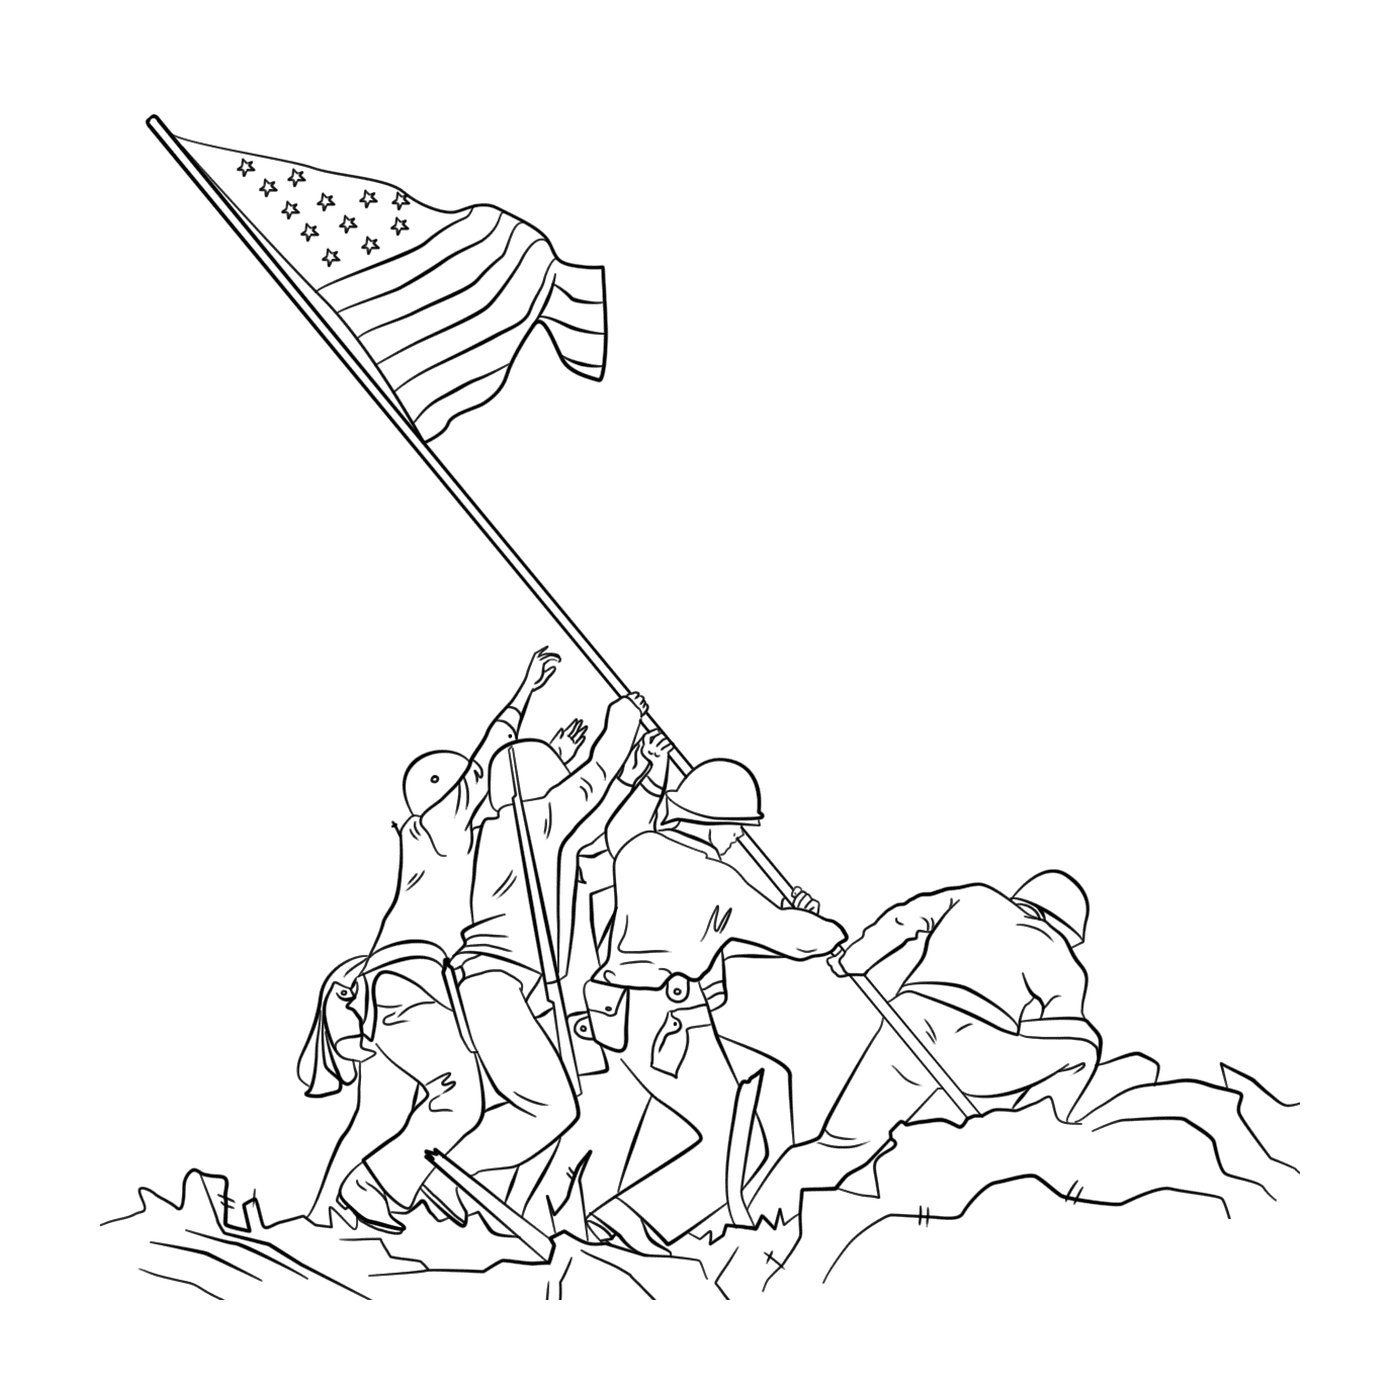  Grupo de personas blandiendo una bandera al izar la bandera en Iwo Jima 